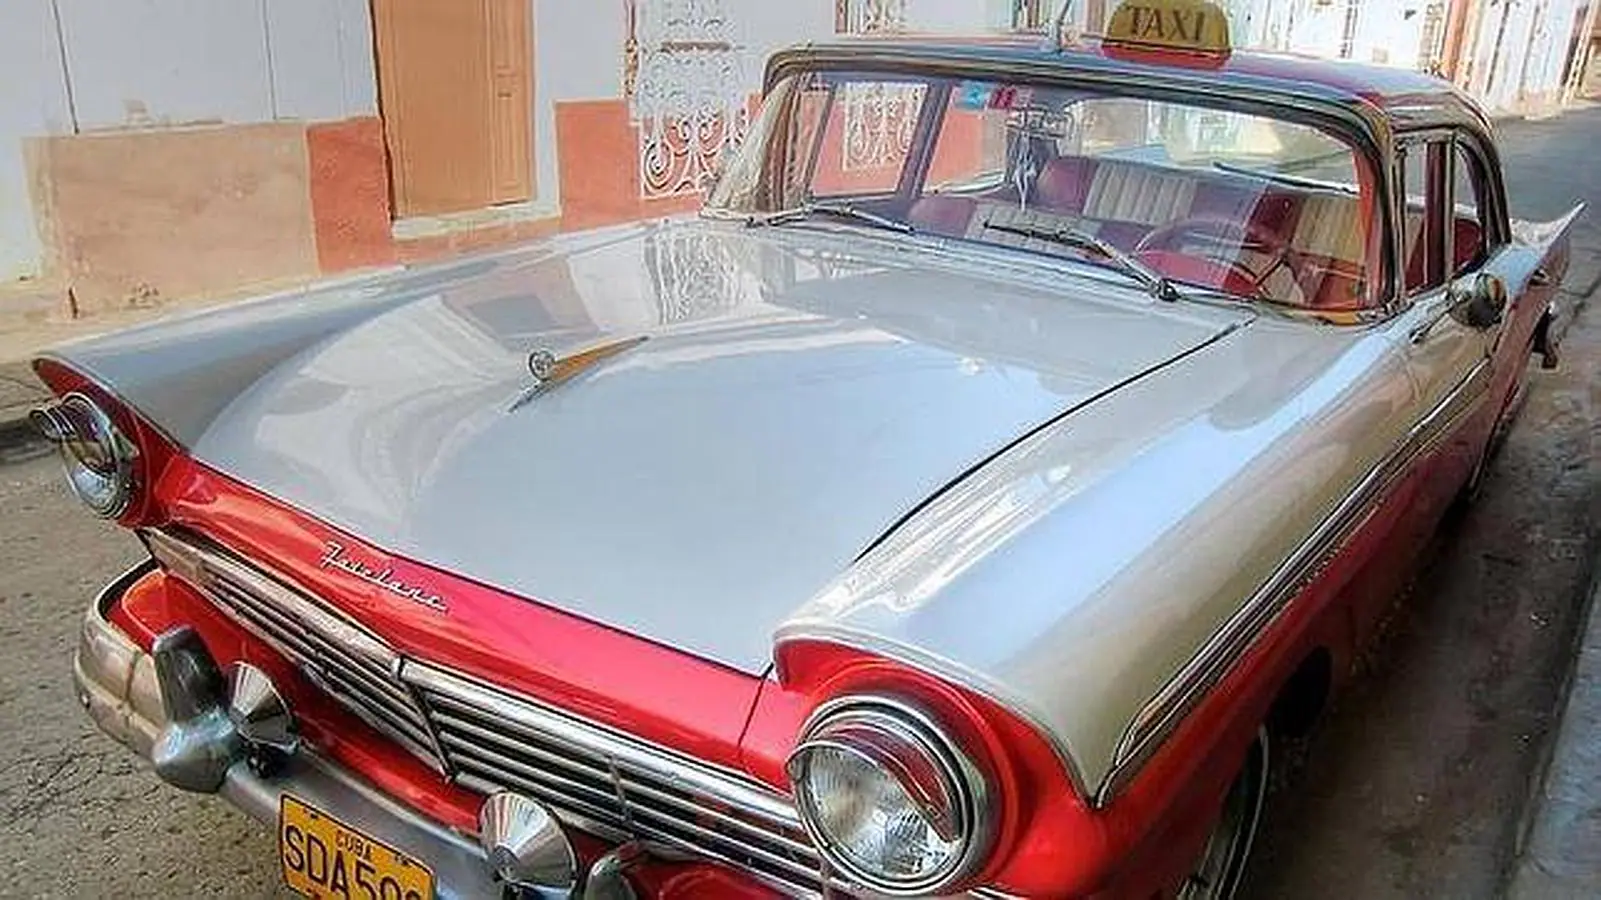 Los poseedores de vehículos como este normalmente los utilizan como taxi y ofrecen visitas turísticas por La Habana